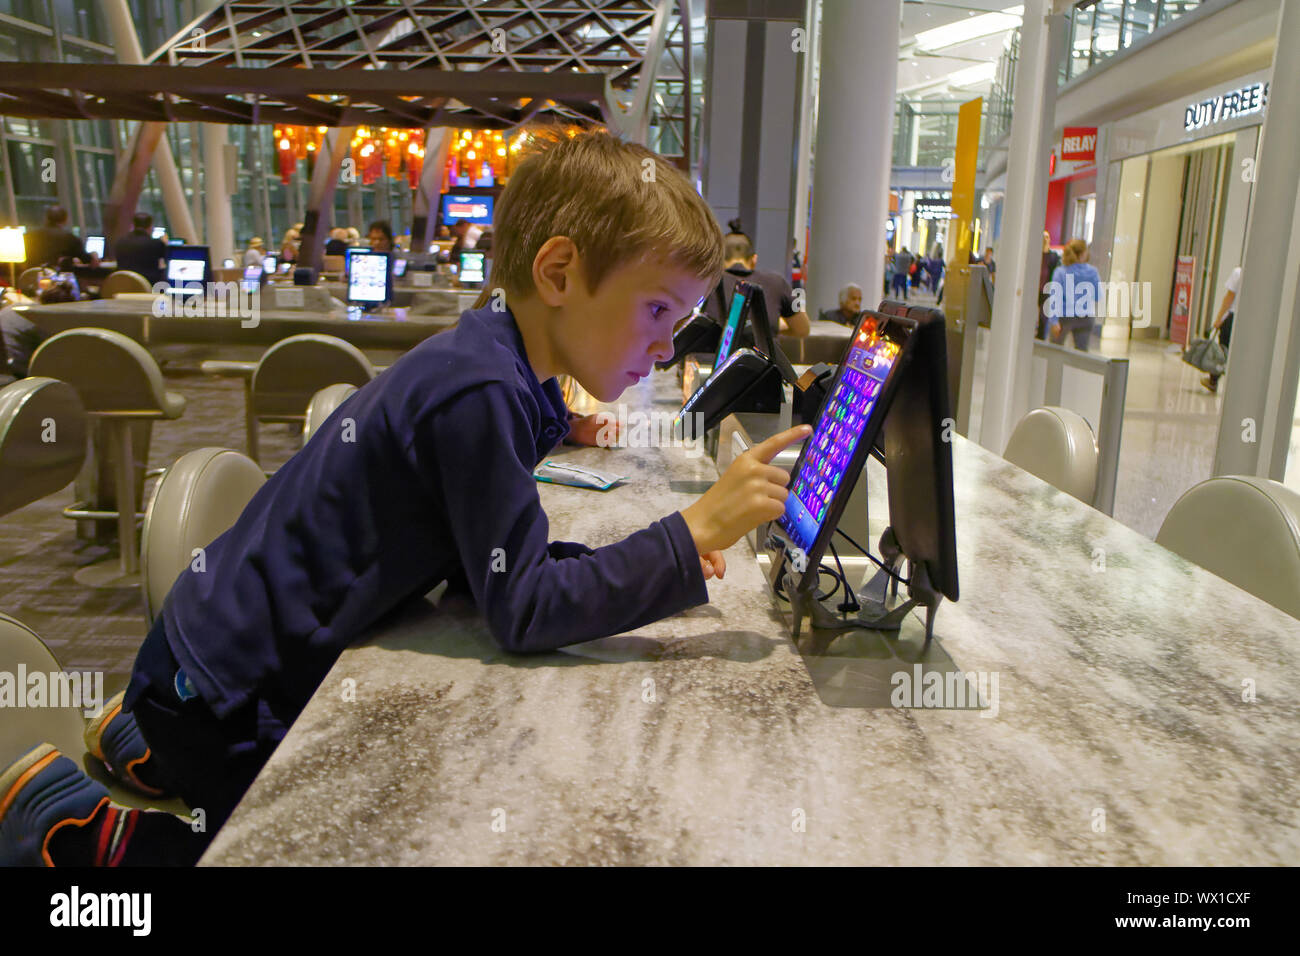 Sie Kinder spielen mit den öffentlichen Gebrauch ipads im Abflugbereich von Toronto Pearson Flughafen Stockfoto